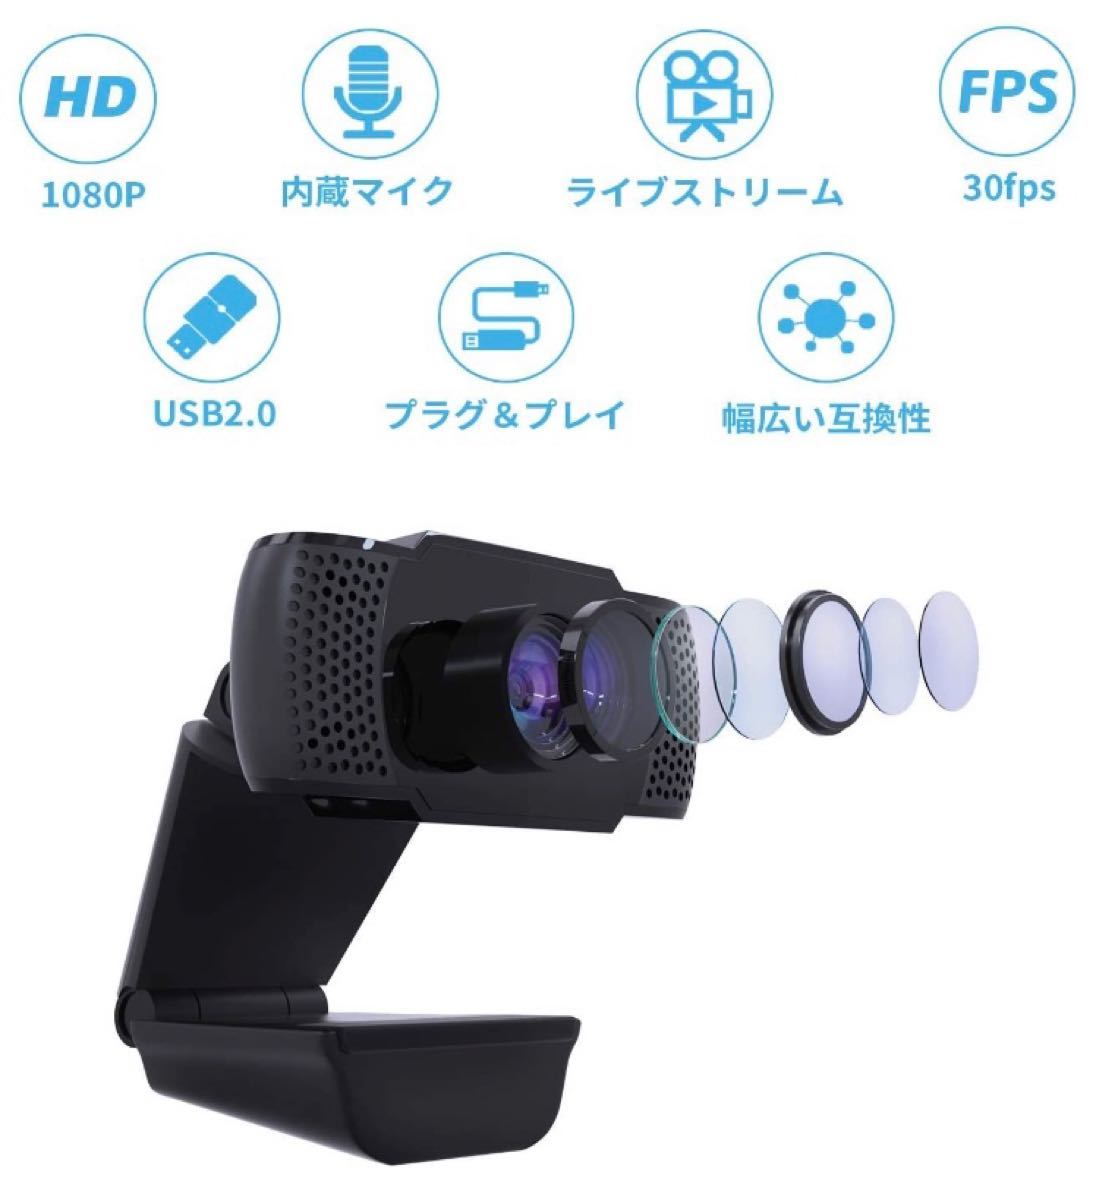 ウェブカメラ 1080P WEBカメラ マイク内蔵 在宅勤務 ビデオ通話